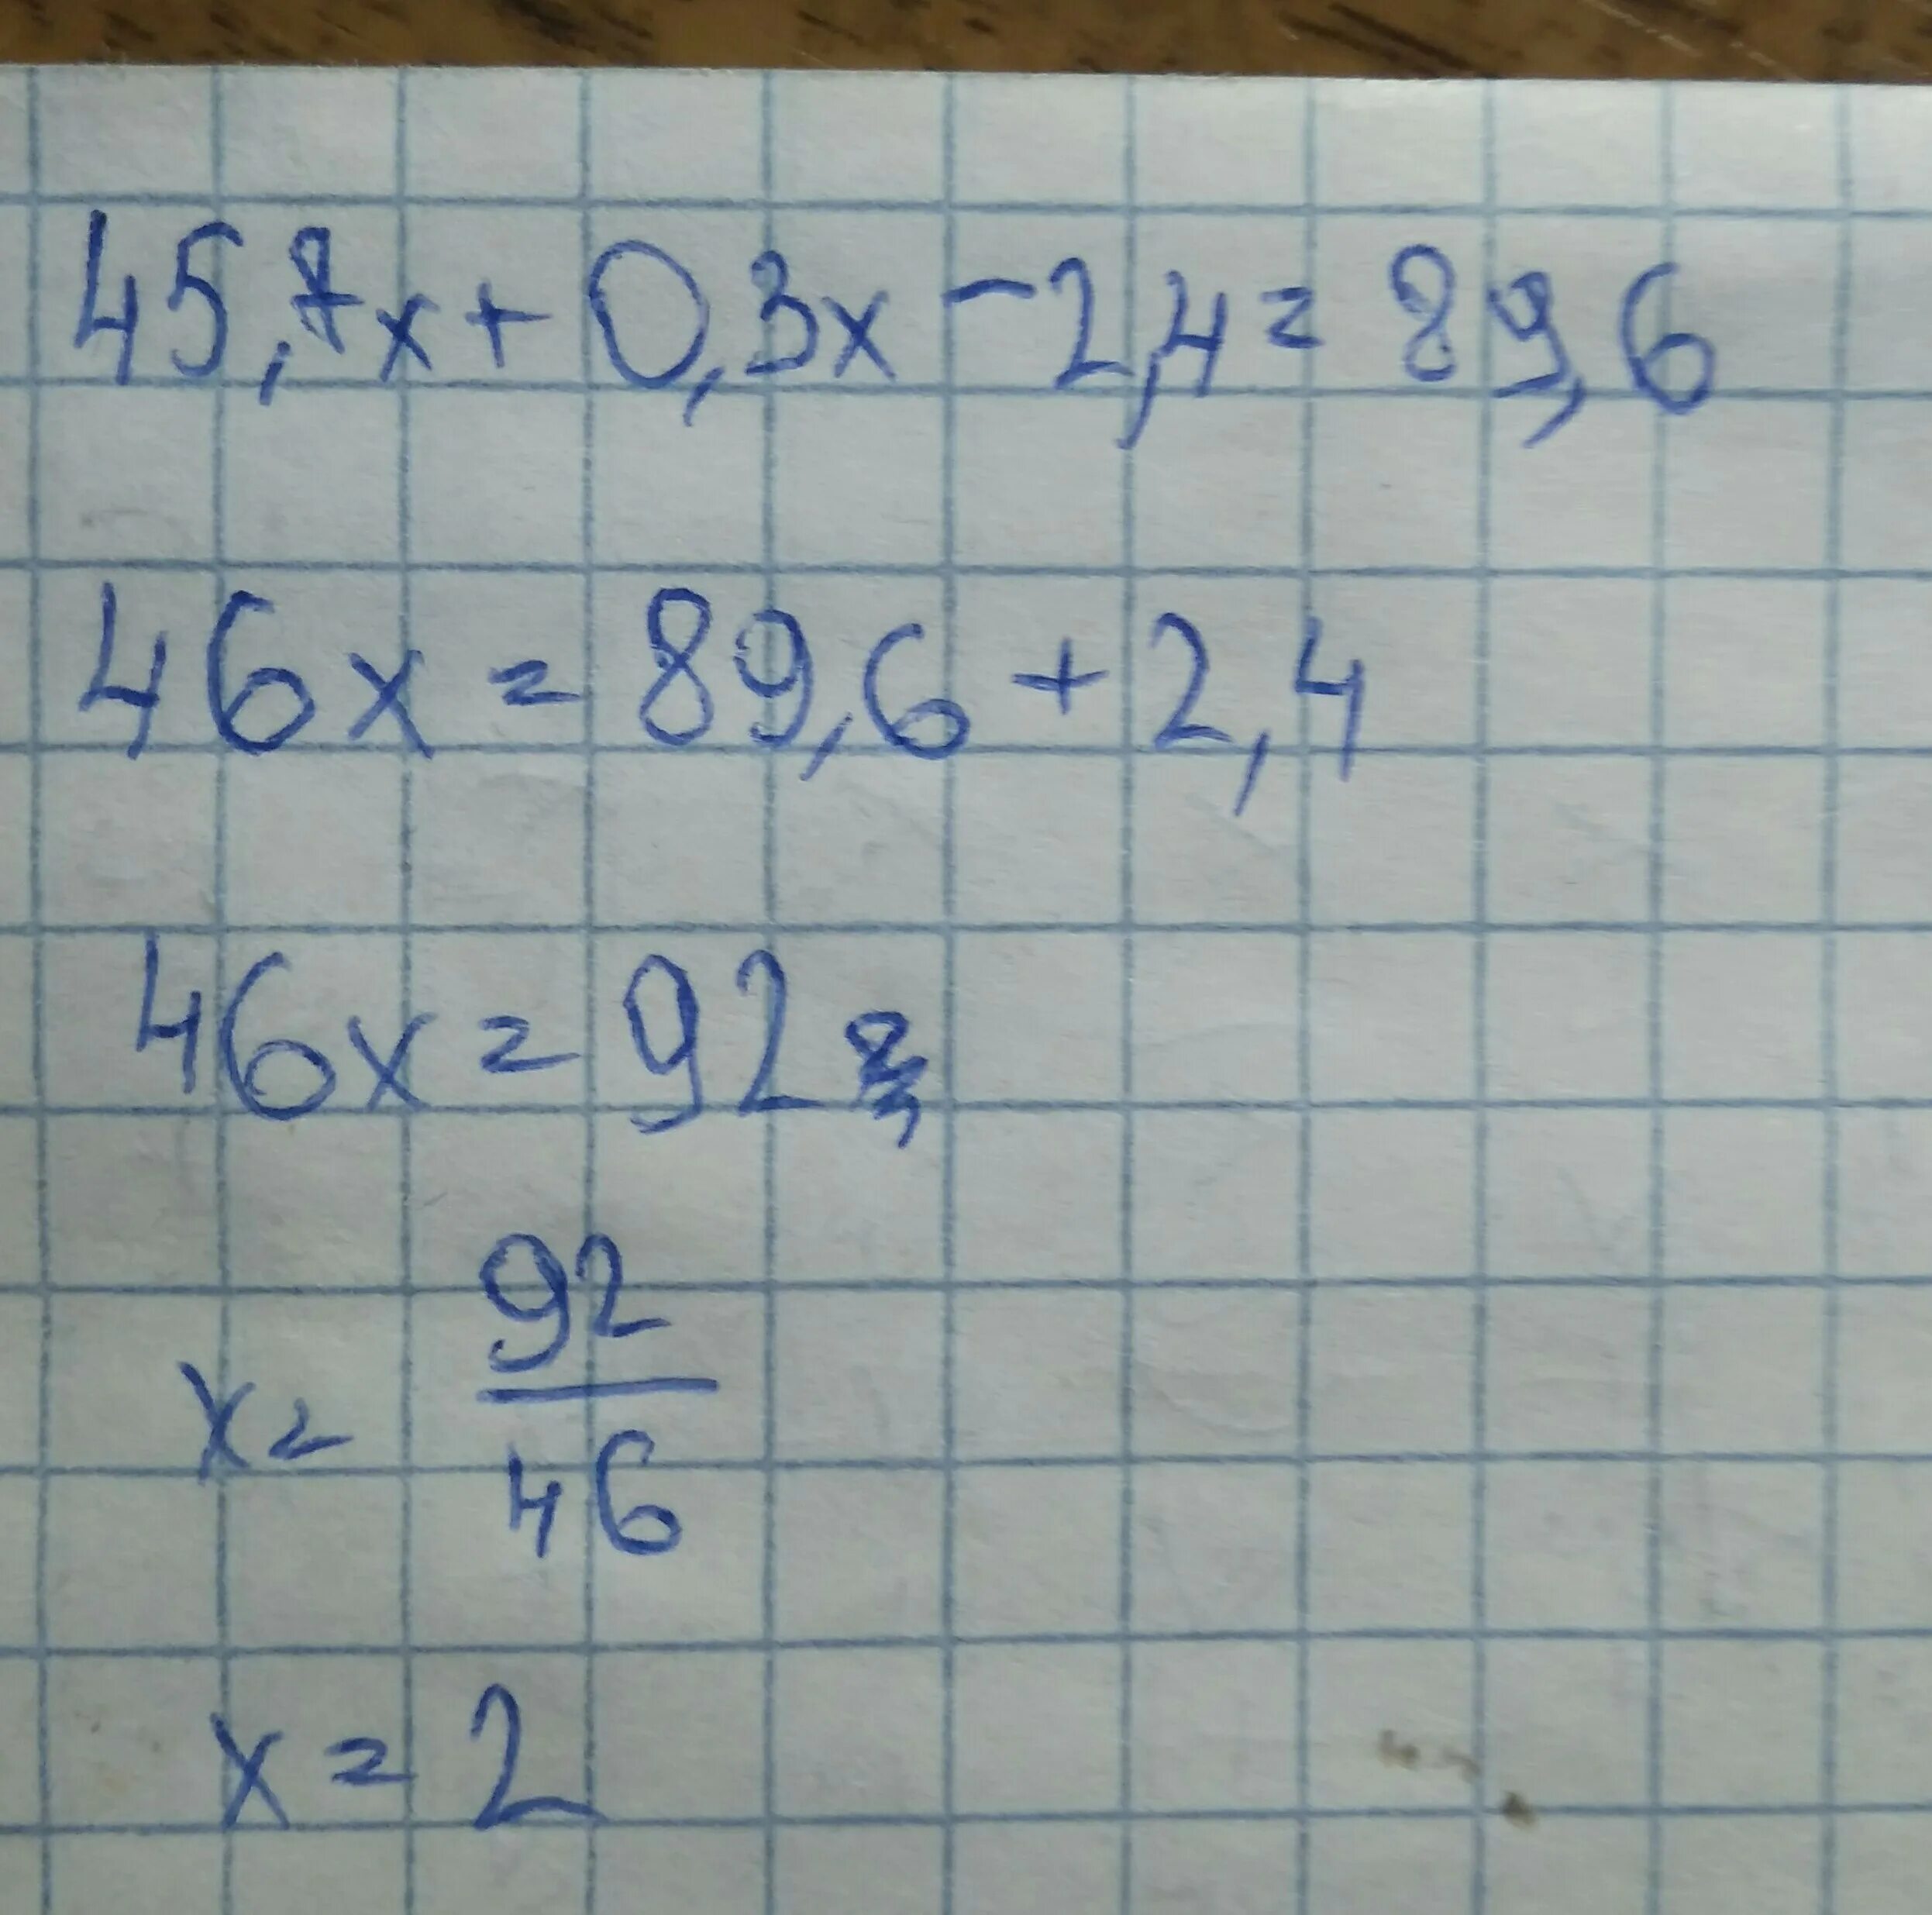 45.7Х+0.3Х-2.4 89.6 решение. Решите уравнение 45.7х+0.3х-2.4 89.6. 45 7х+0.3-2.4 89.6. 45 7х 0 3х-2 4 89 6.